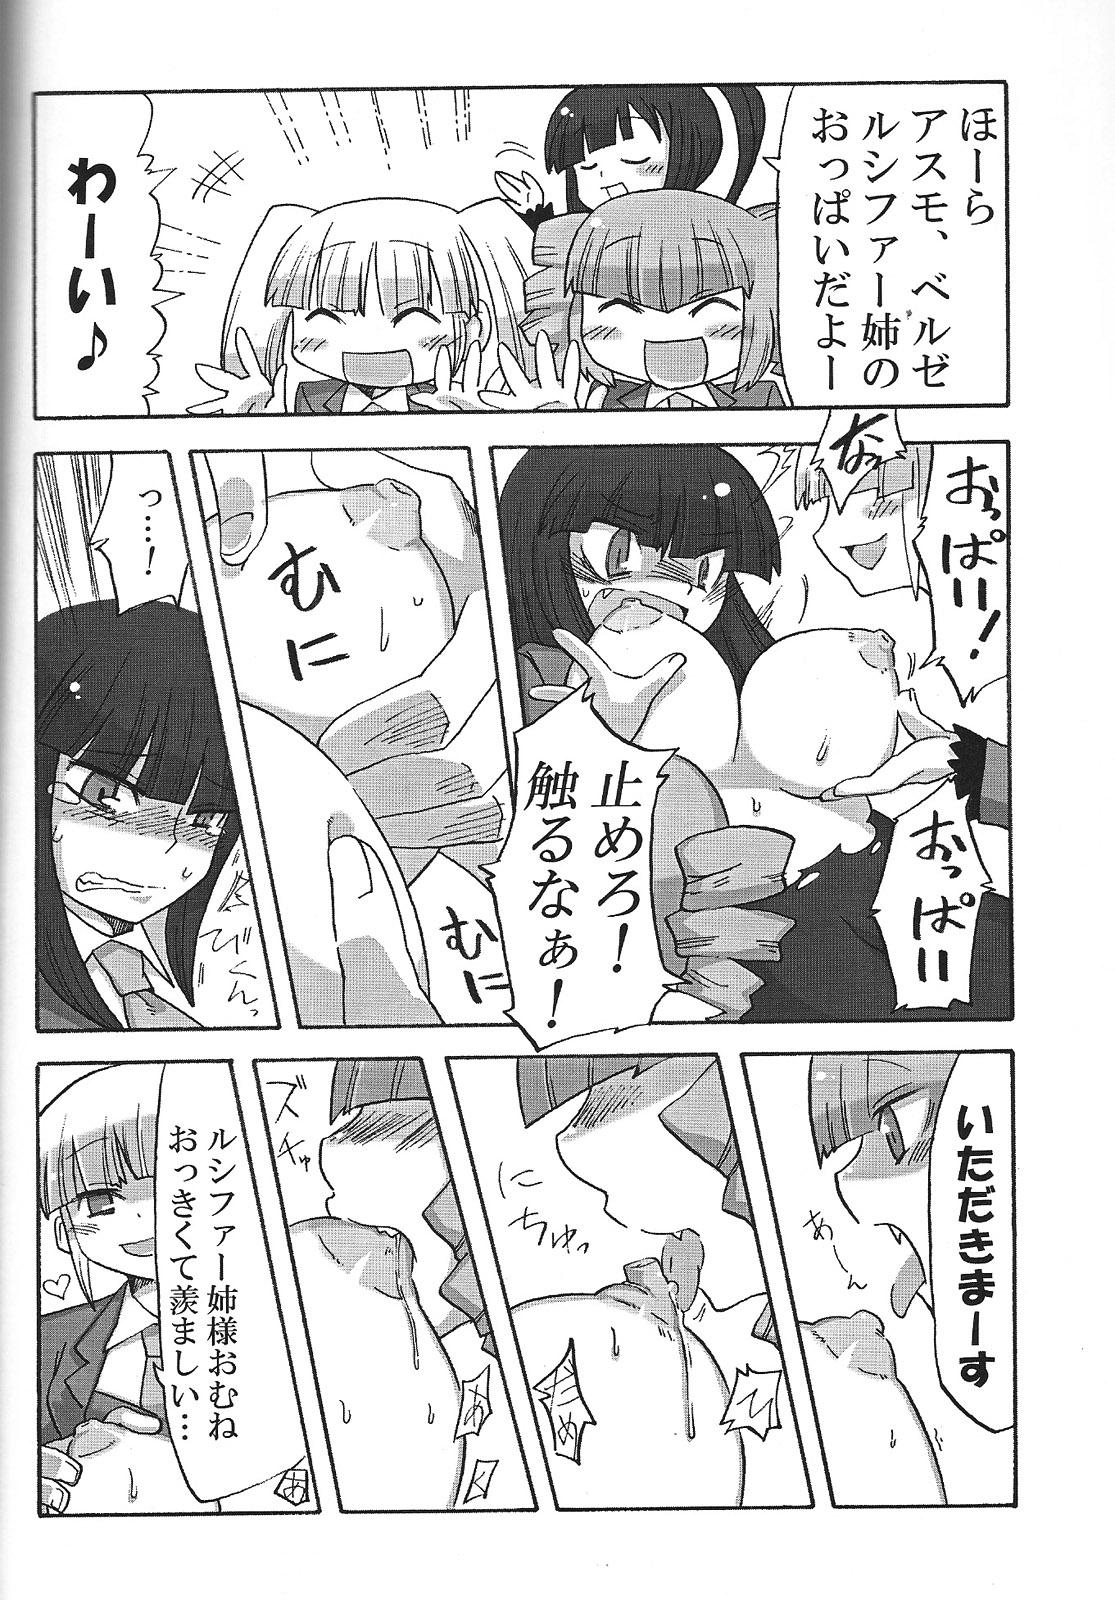 Sexo Nakayoshi 7 Shimai - Umineko no naku koro ni Toying - Page 9